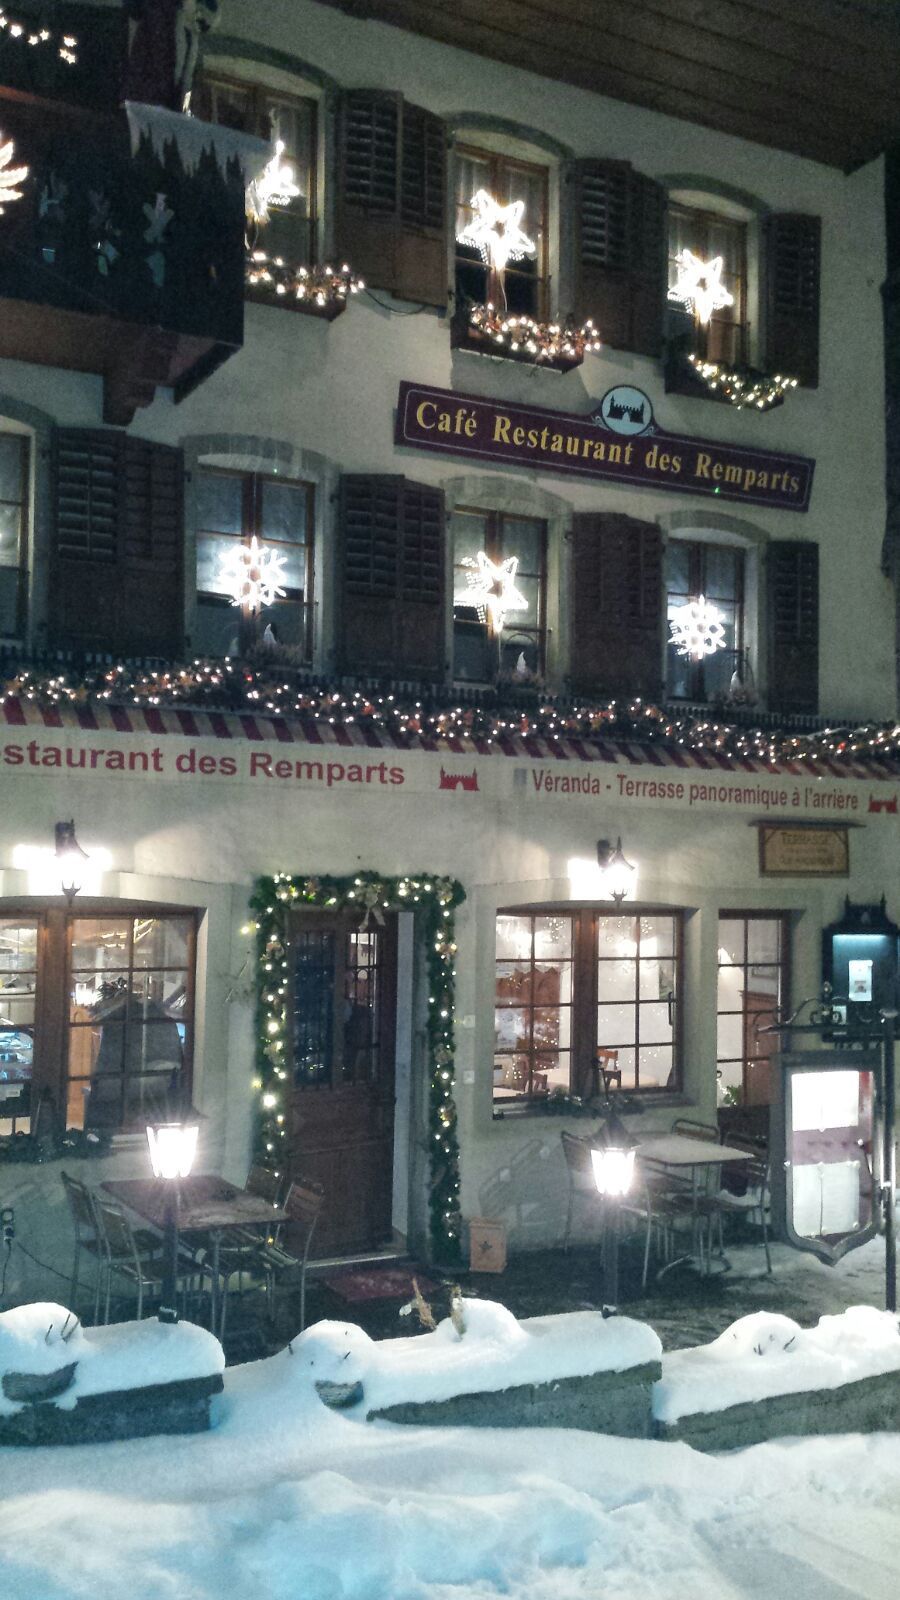 en hiver - Le Café-Restaurant des Remparts